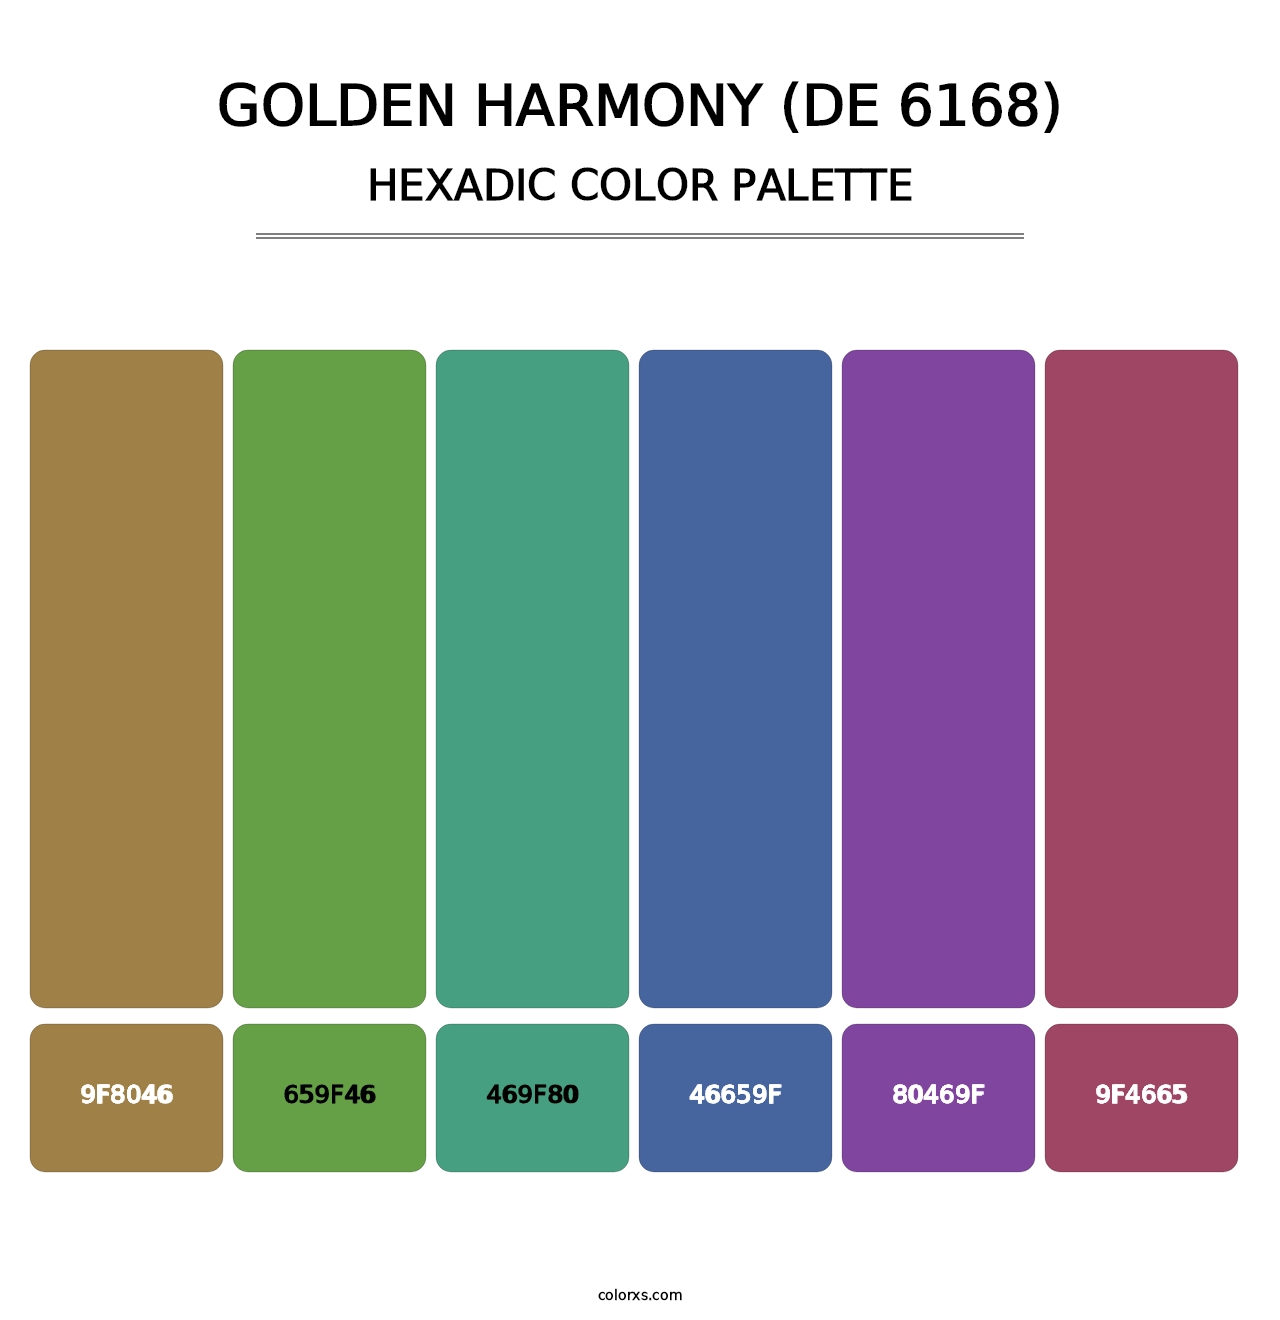 Golden Harmony (DE 6168) - Hexadic Color Palette